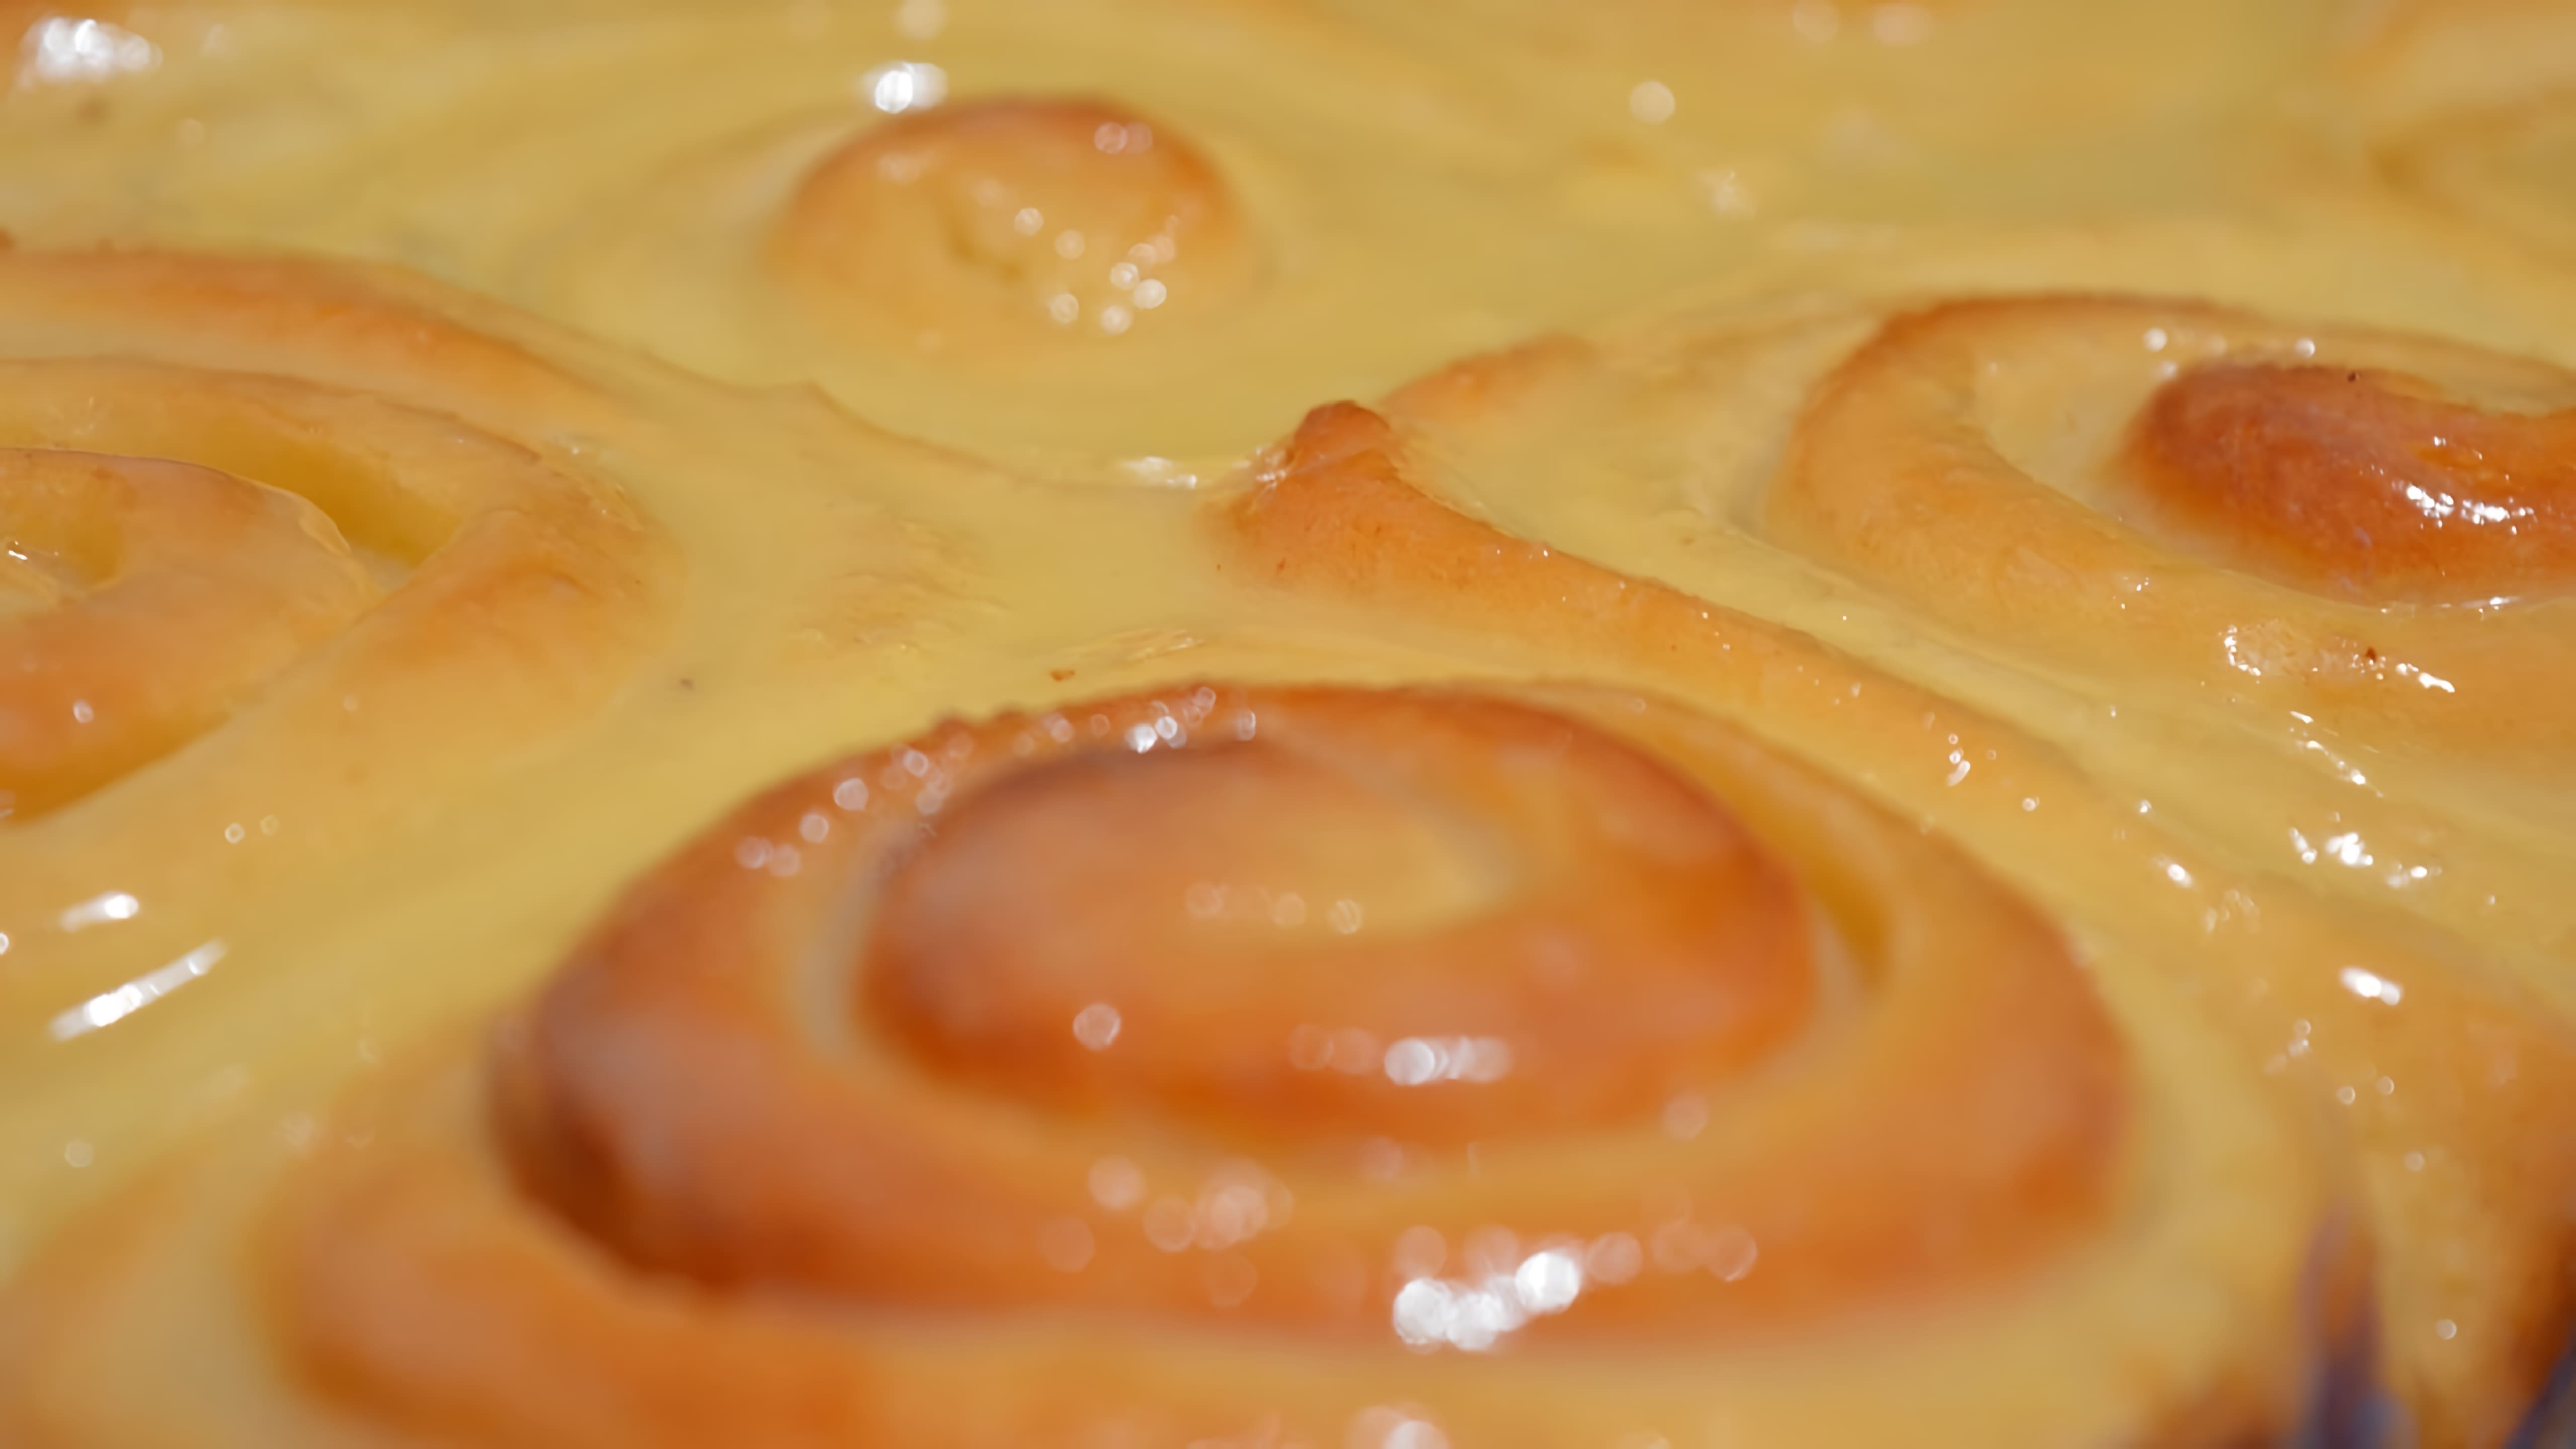 В этом видео демонстрируется процесс приготовления булочек "Синабон" с заварным кремом на основе сгущенного молока